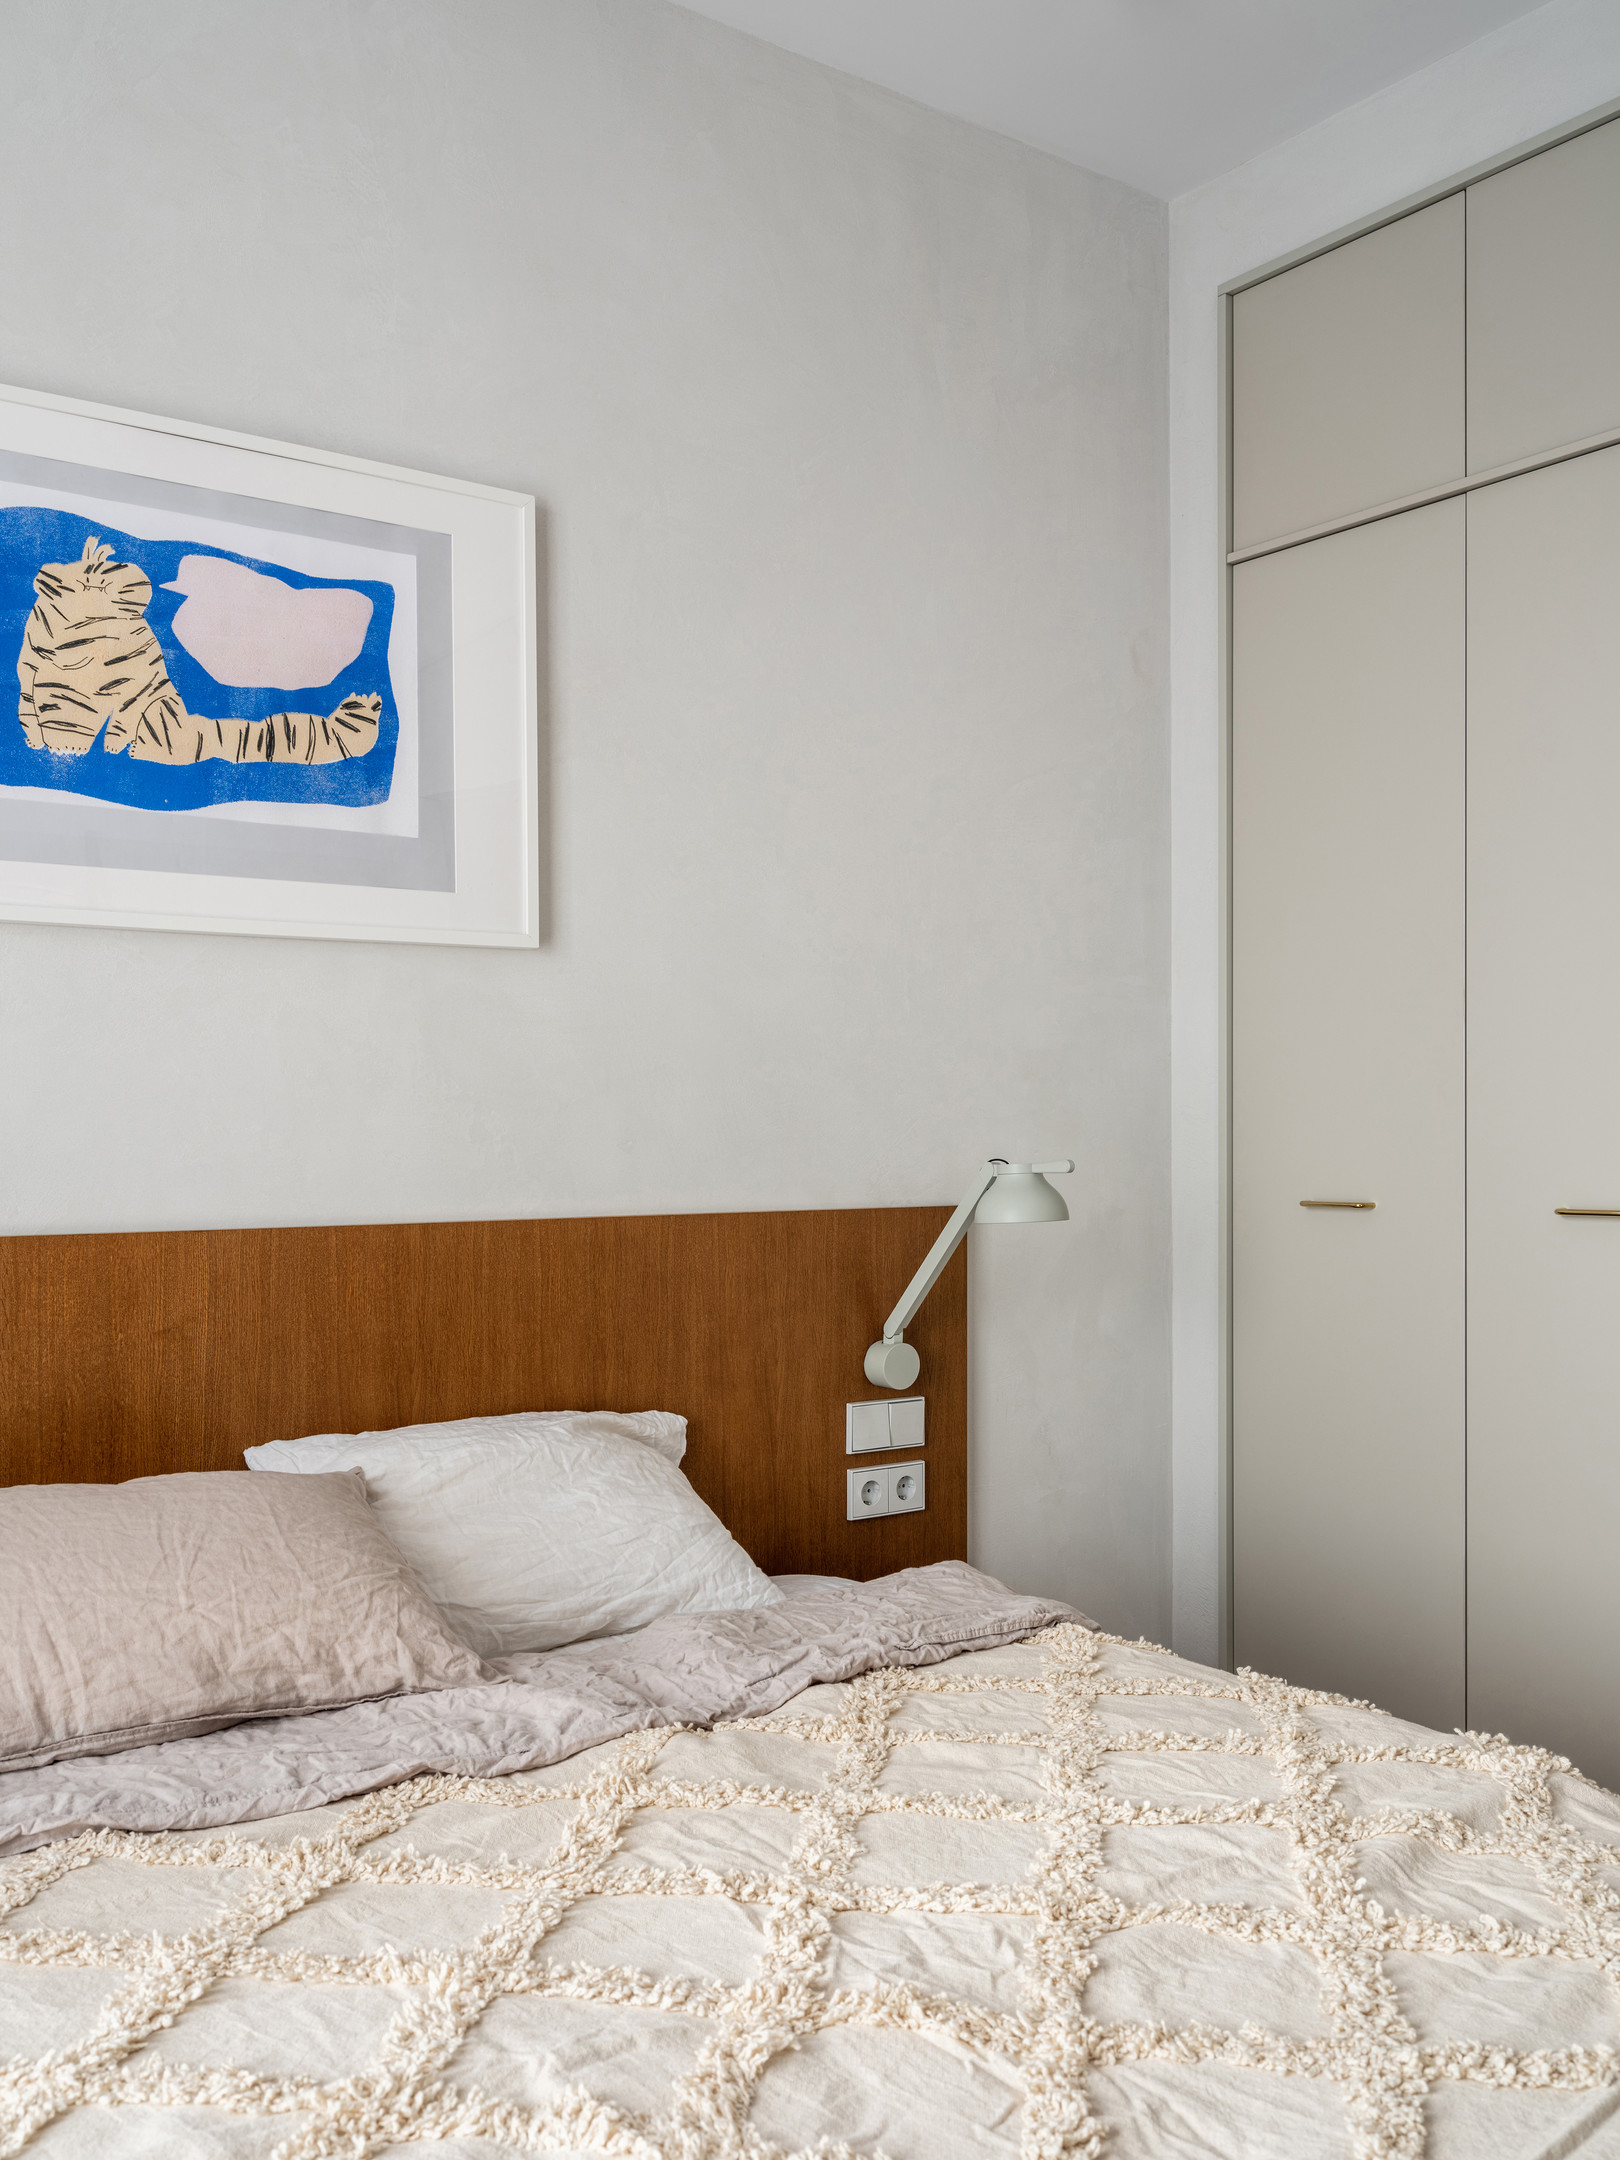 Hai chiếc đèn ngủ kết hợp đèn đọc sách gắn đối xứng ở 2 bên đầu giường tạo sự cân đối, hài hòa. Cũng như hành lang lối vào hay phòng làm việc, NTK nội thất cũng tối ưu hóa khả năng lưu trữ trong căn hộ bằng cách sử dụng tủ quần áo kịch trần màu xám trang nhã.